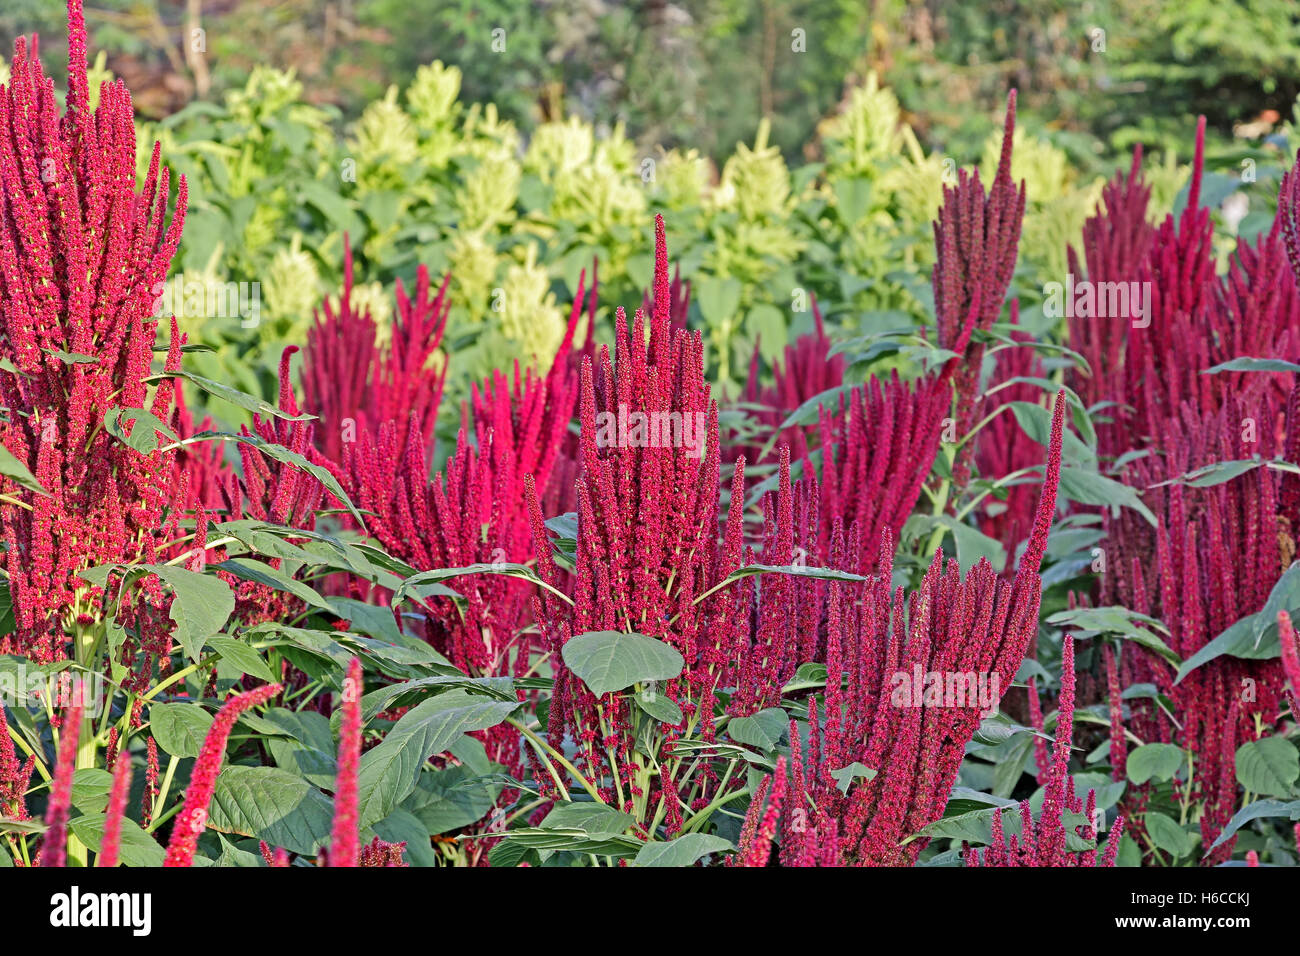 India plantas amaranto rojo y verde en el campo. El amaranto se cultiva como verduras, cereales y plantas ornamentales. Foto de stock